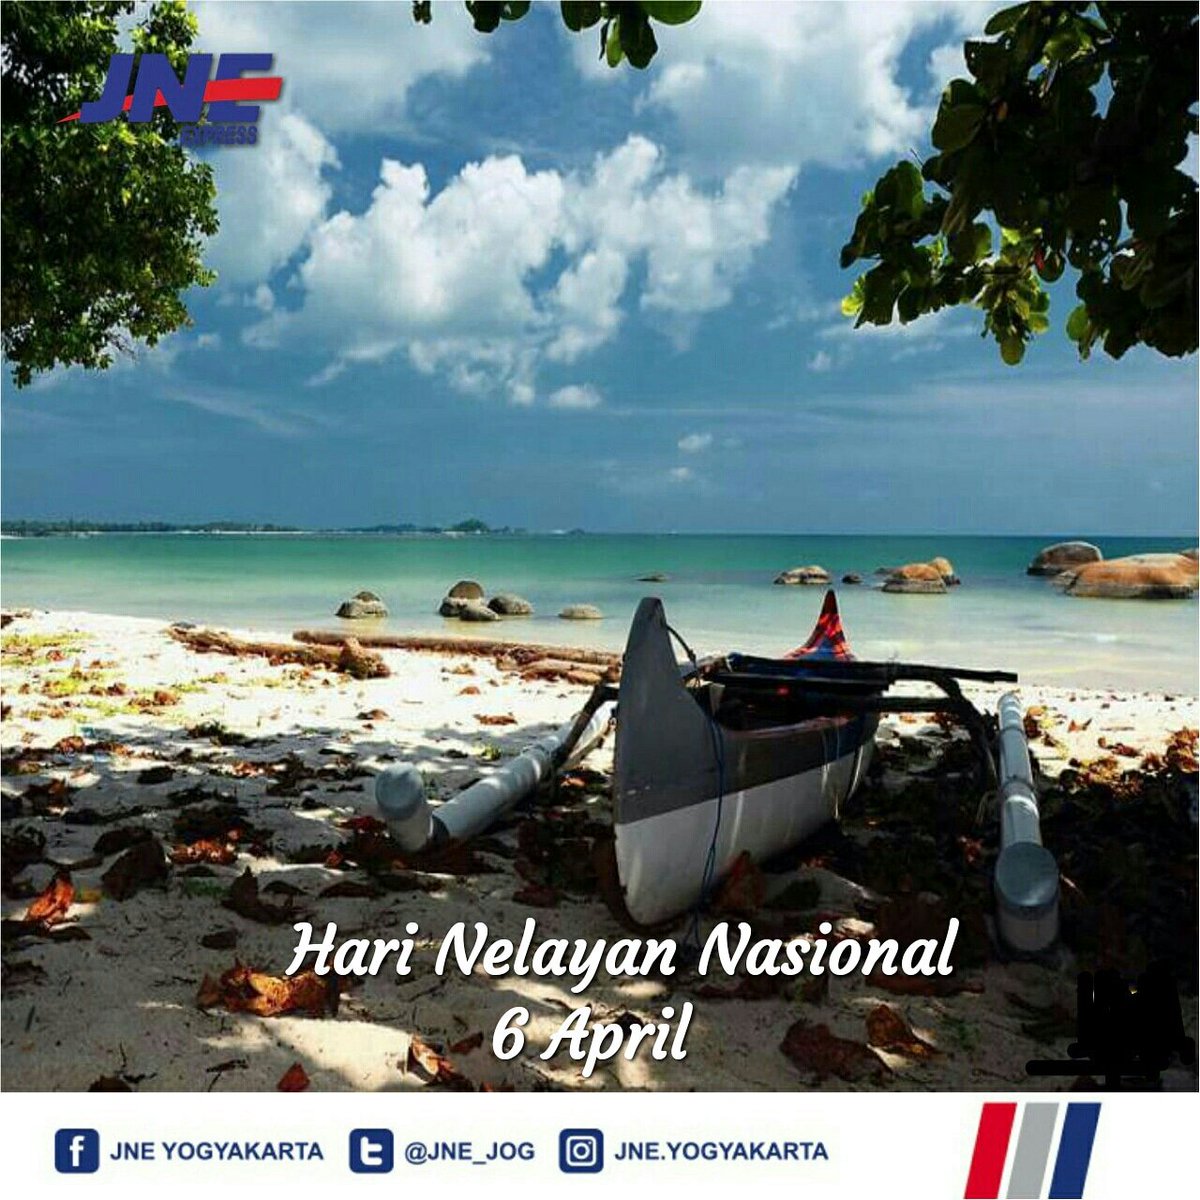 Selamat Hari Nasional 2018, semoga sektor perikanan dan kelautan Indonesia dapat berjaya dan perekonomian para nelayan semakin meningkat.
#jneberbah #olshopjogja #olshopyogya #olshopyogyakarta #jogja #yogyakarta  #harinelayannasional #nelayan #ikan #fishing #stopilegalfishing